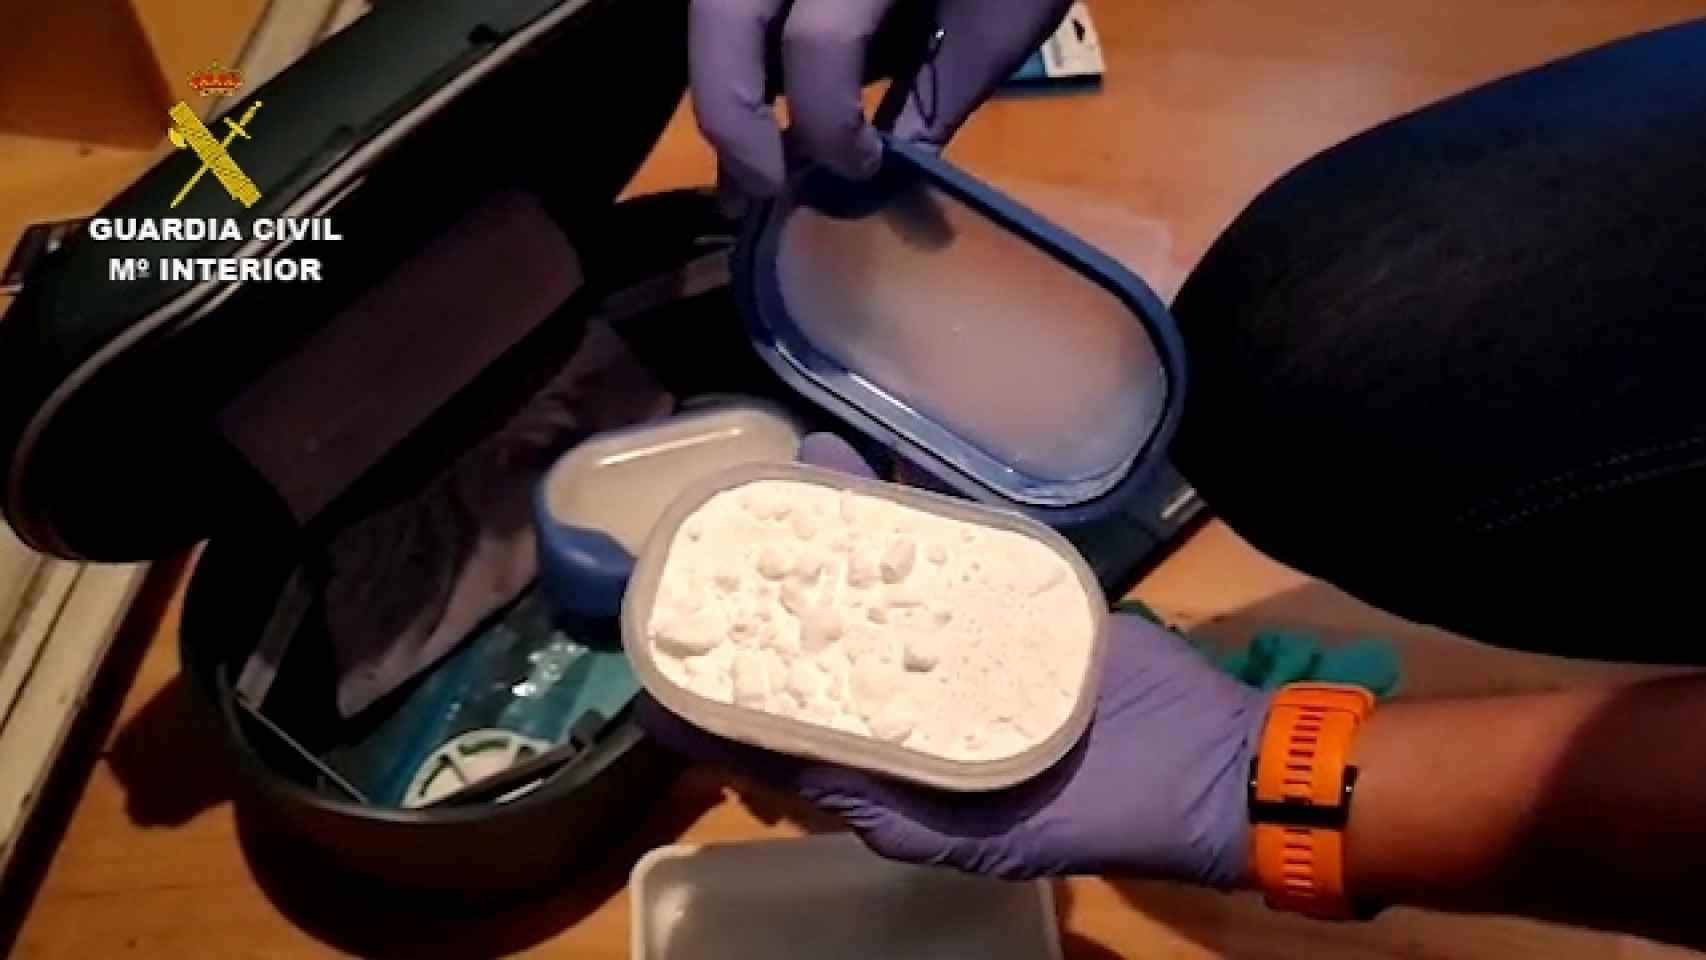 Los 108 gramos de cocaína hallados en la vivienda de los atracadores.